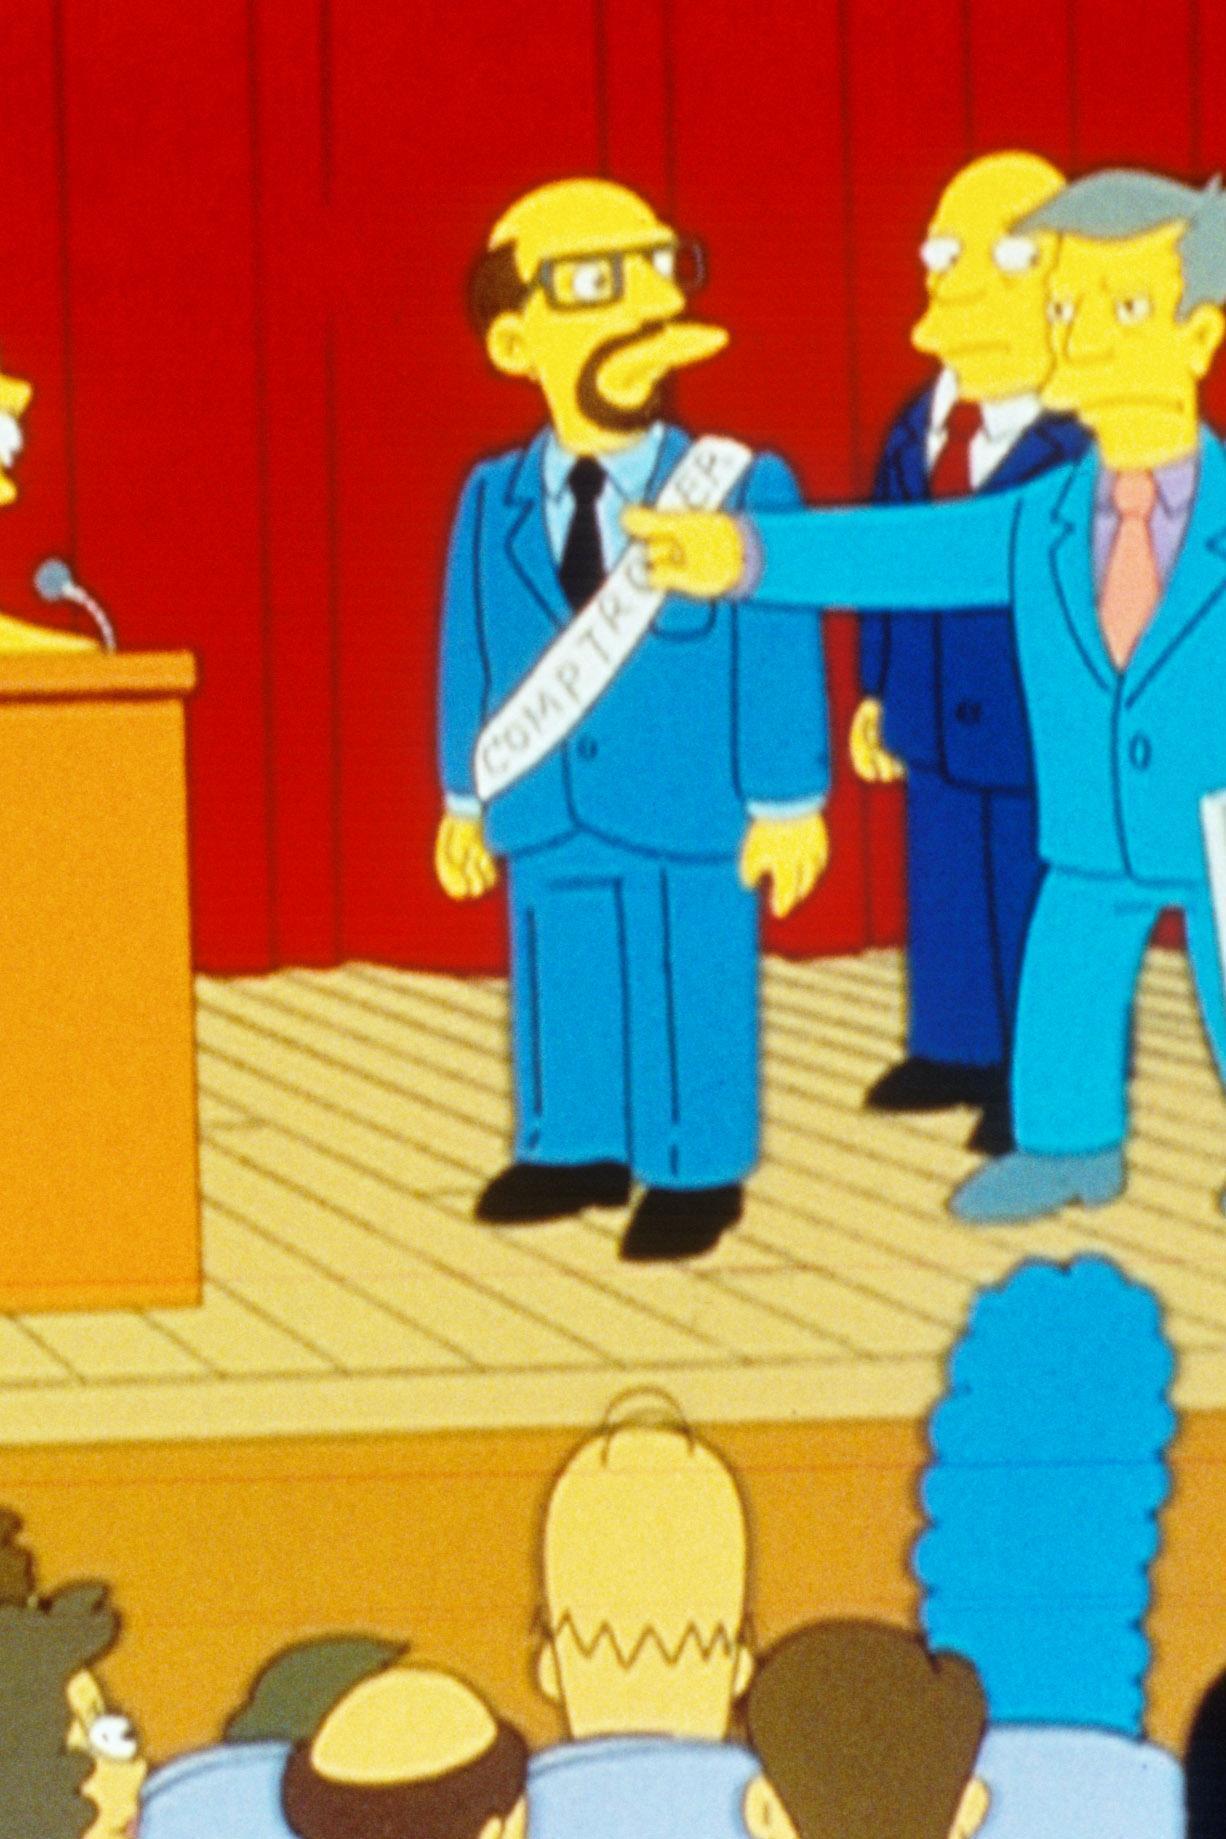 Les Simpson - Lisa a la meilleure note